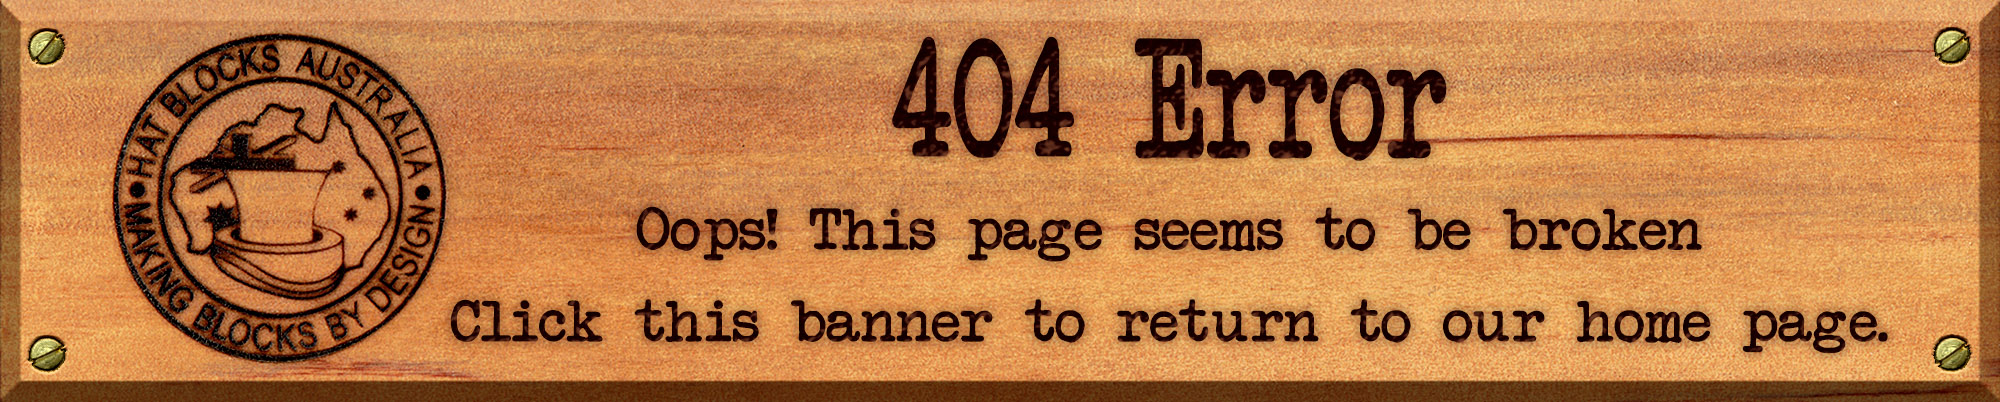 404 error banner.jpg